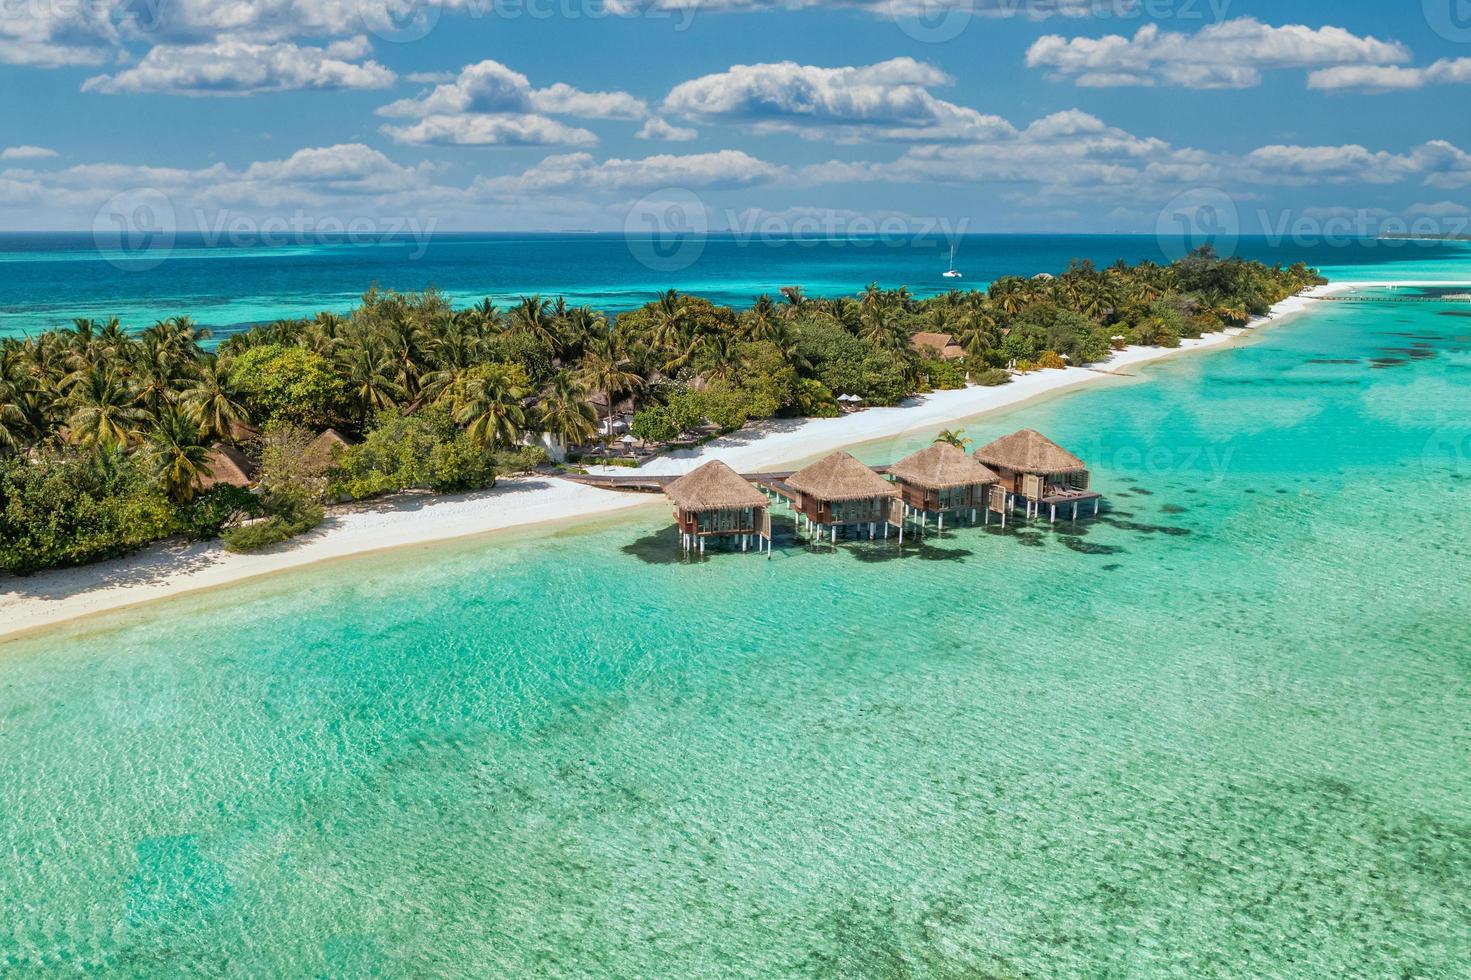 incroyable plage de l'île. maldives de vue aérienne paysage tropical tranquille bord de mer avec palmiers sur la plage de sable blanc. rive nature exotique, île de villégiature de luxe. beau tourisme de vacances d'été photo